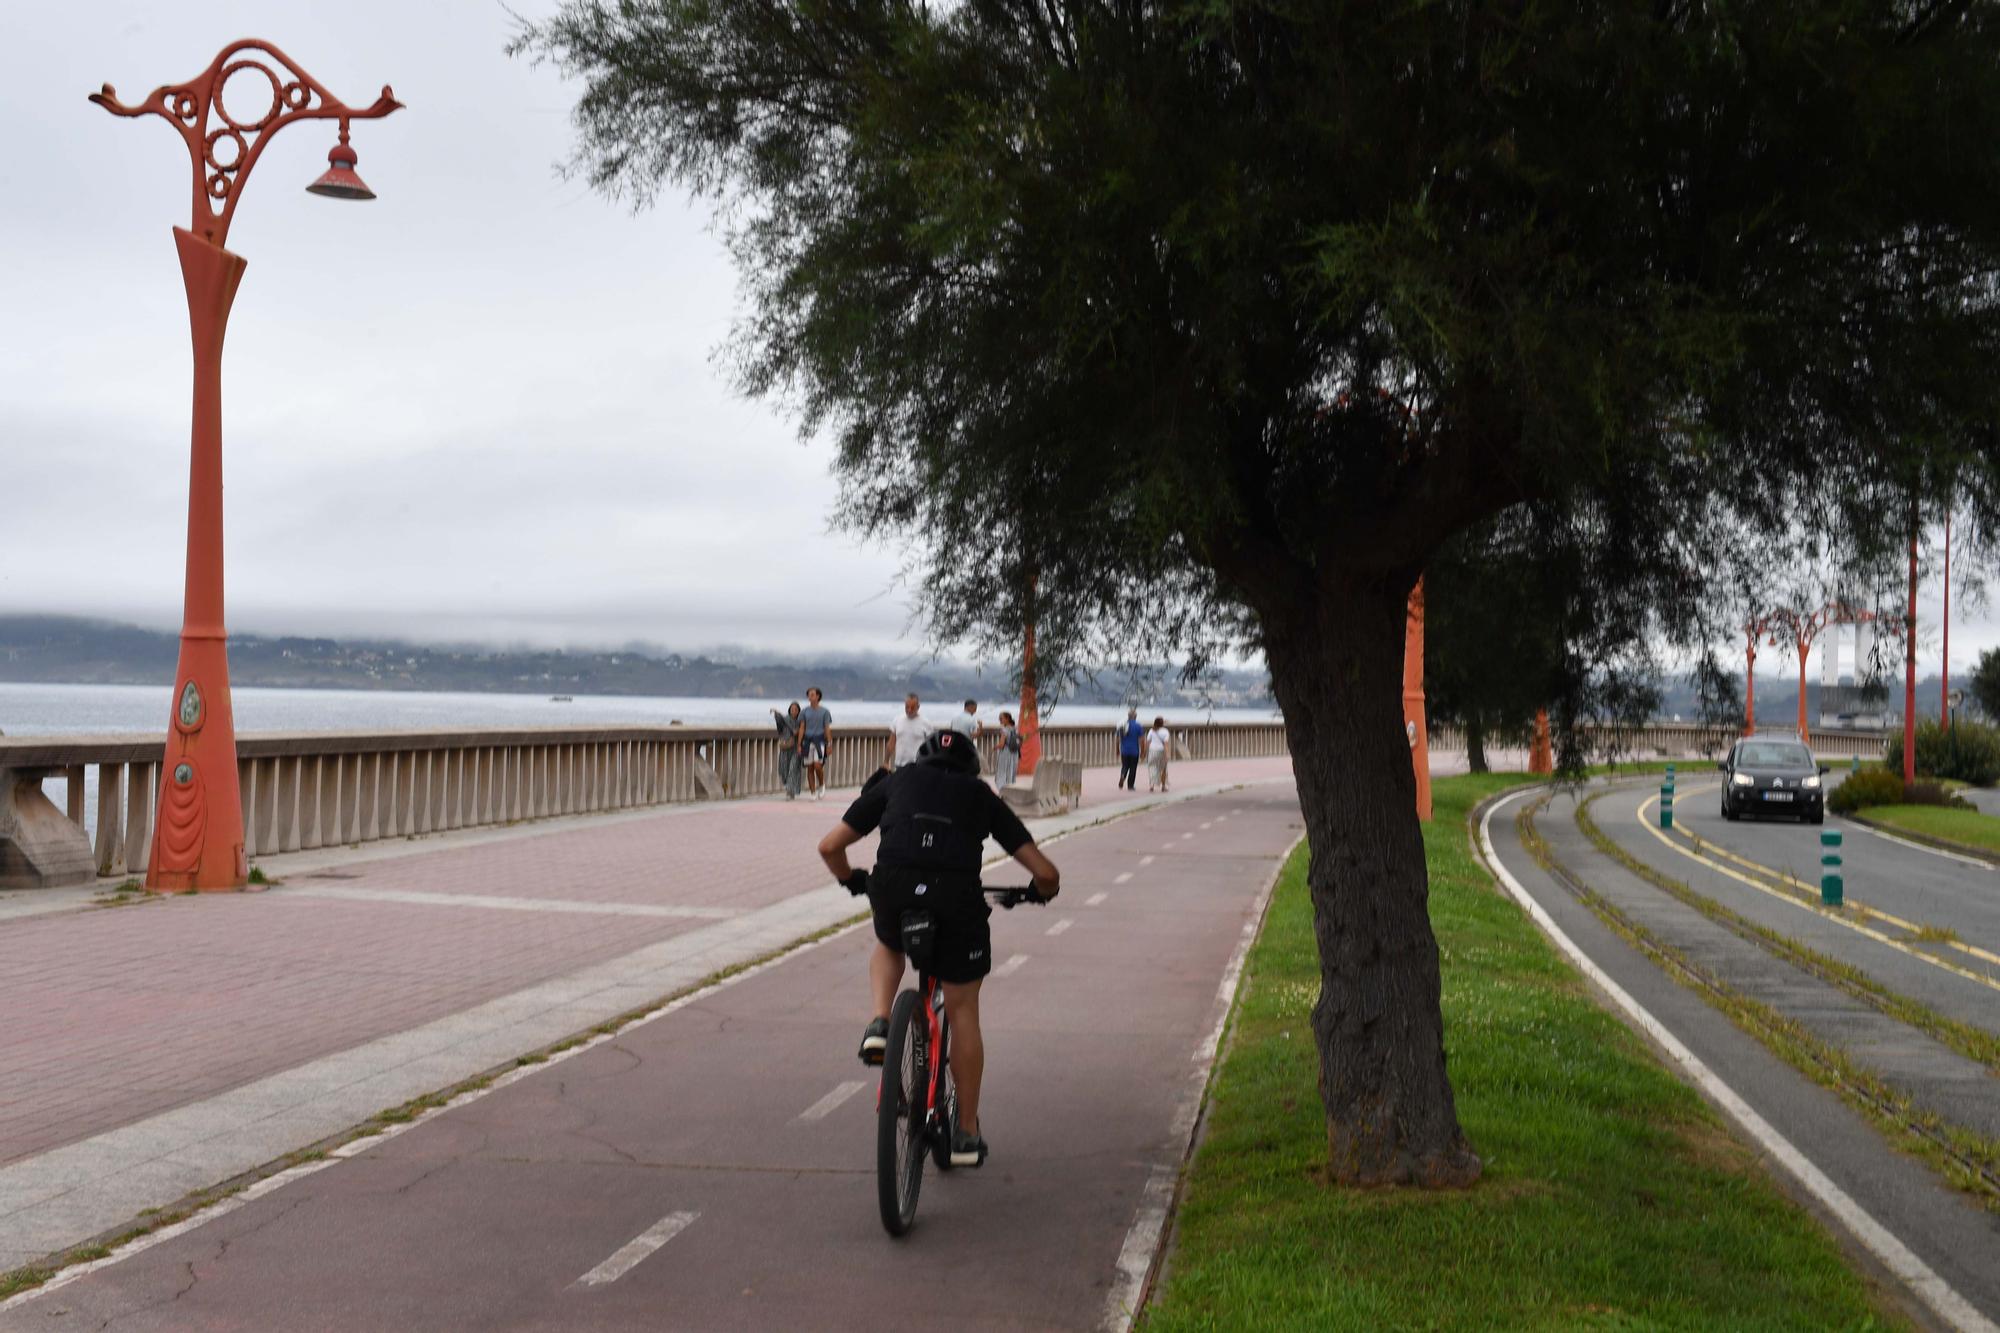 Al carril bici de A Coruña le crecen ramas